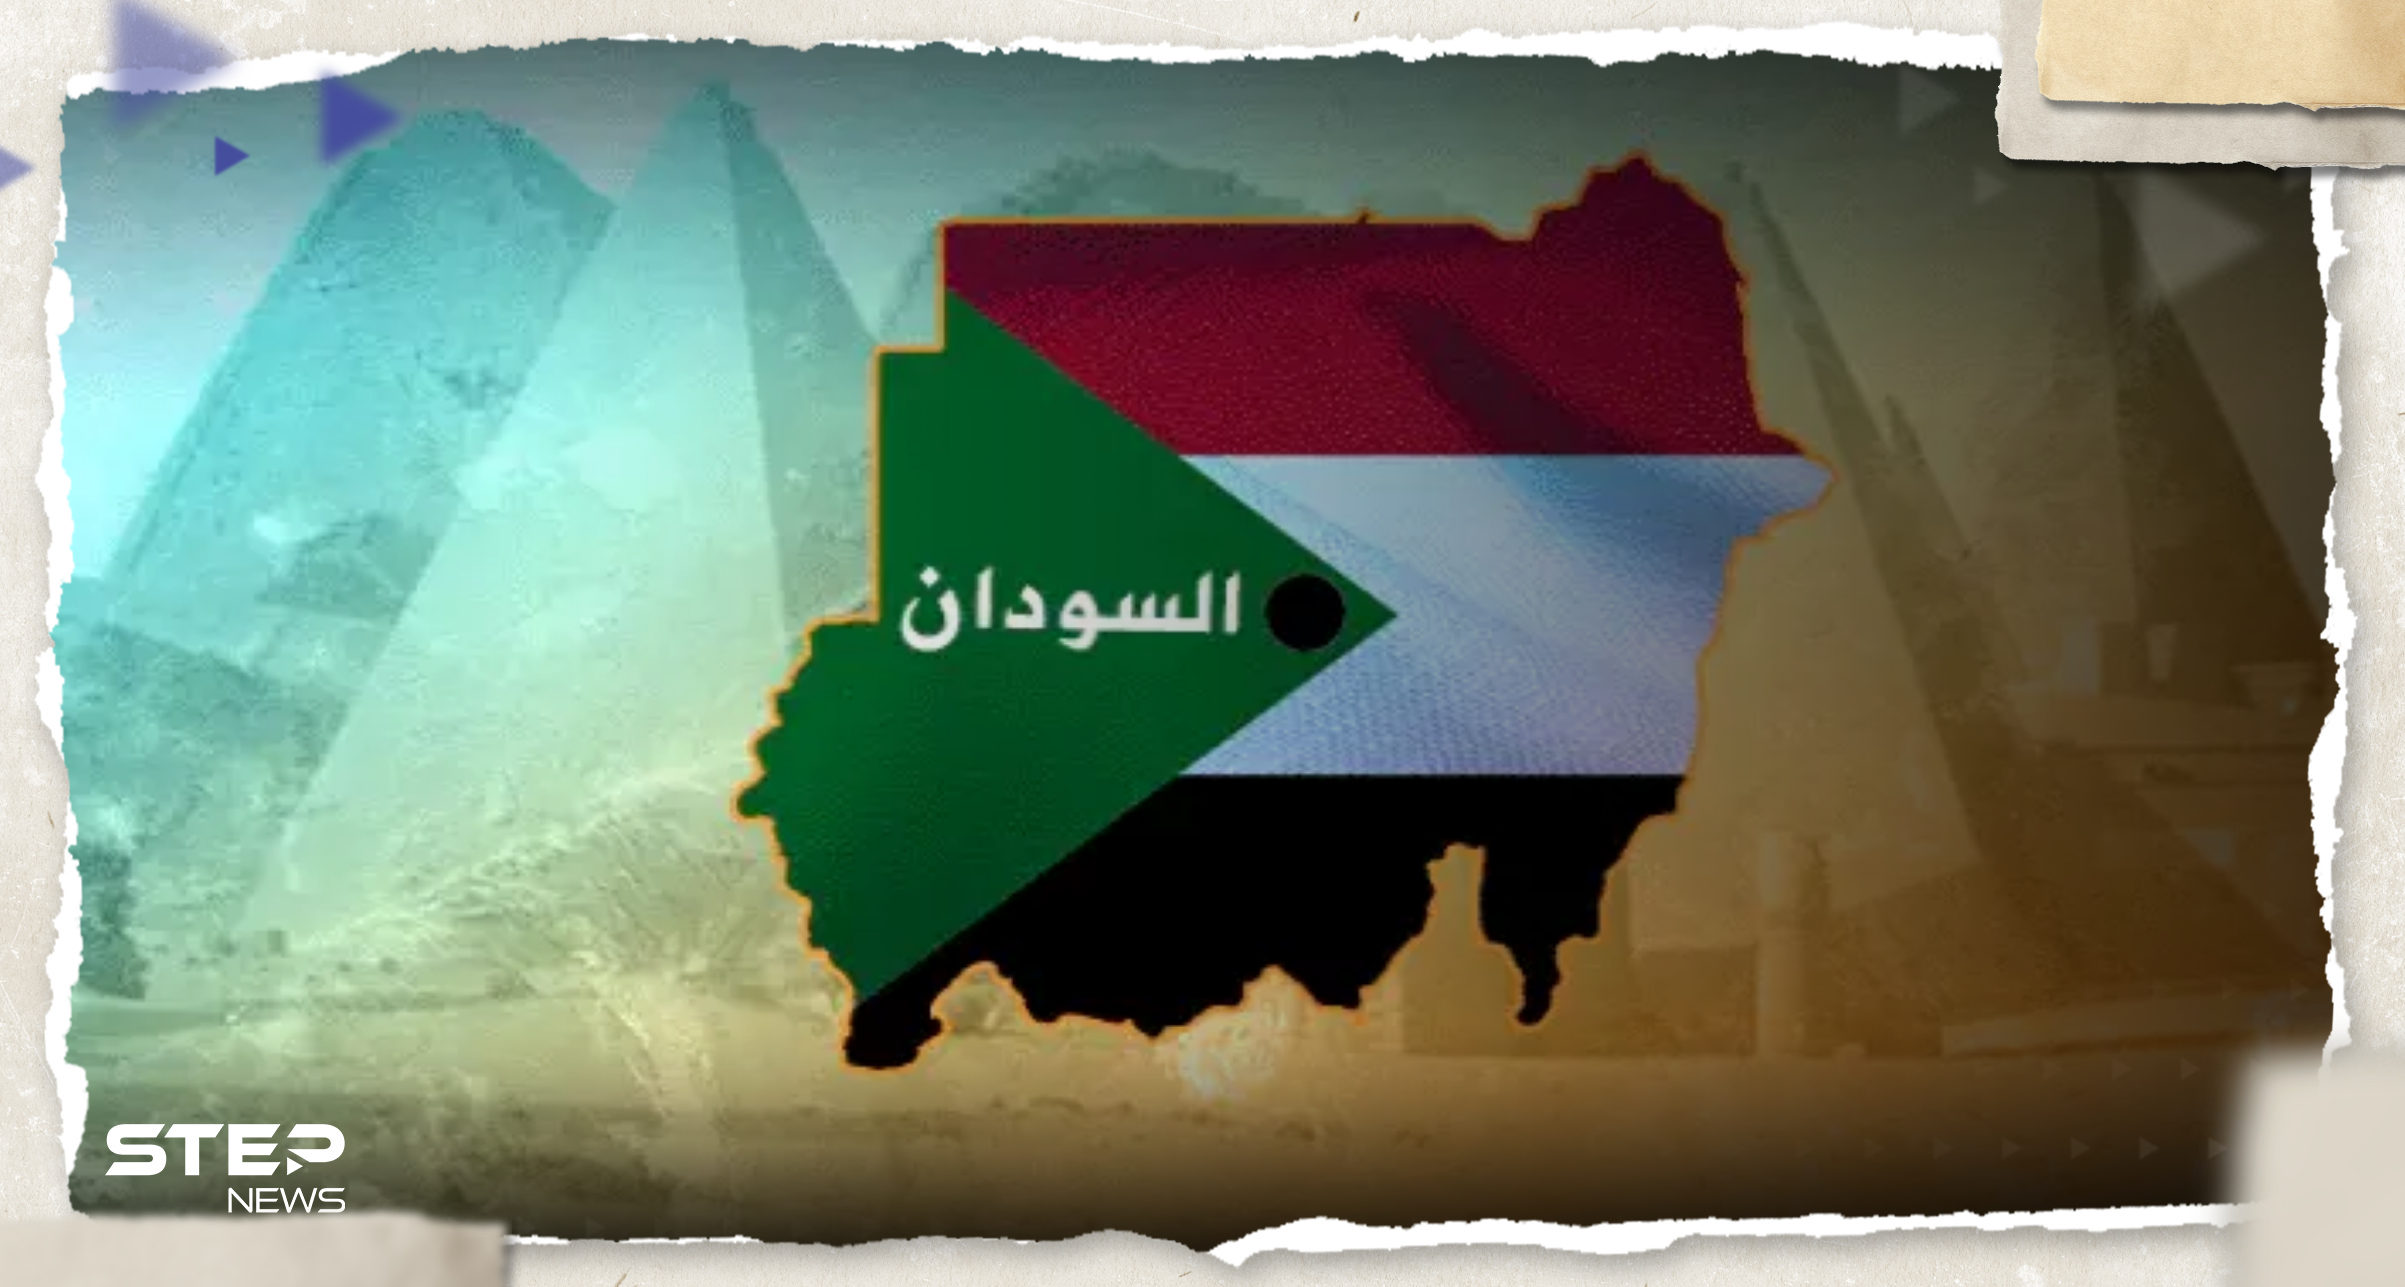 الأزهر يصدر بيانًا بشأن السودان ودول جواره تتتحرك لوقف الصراع 